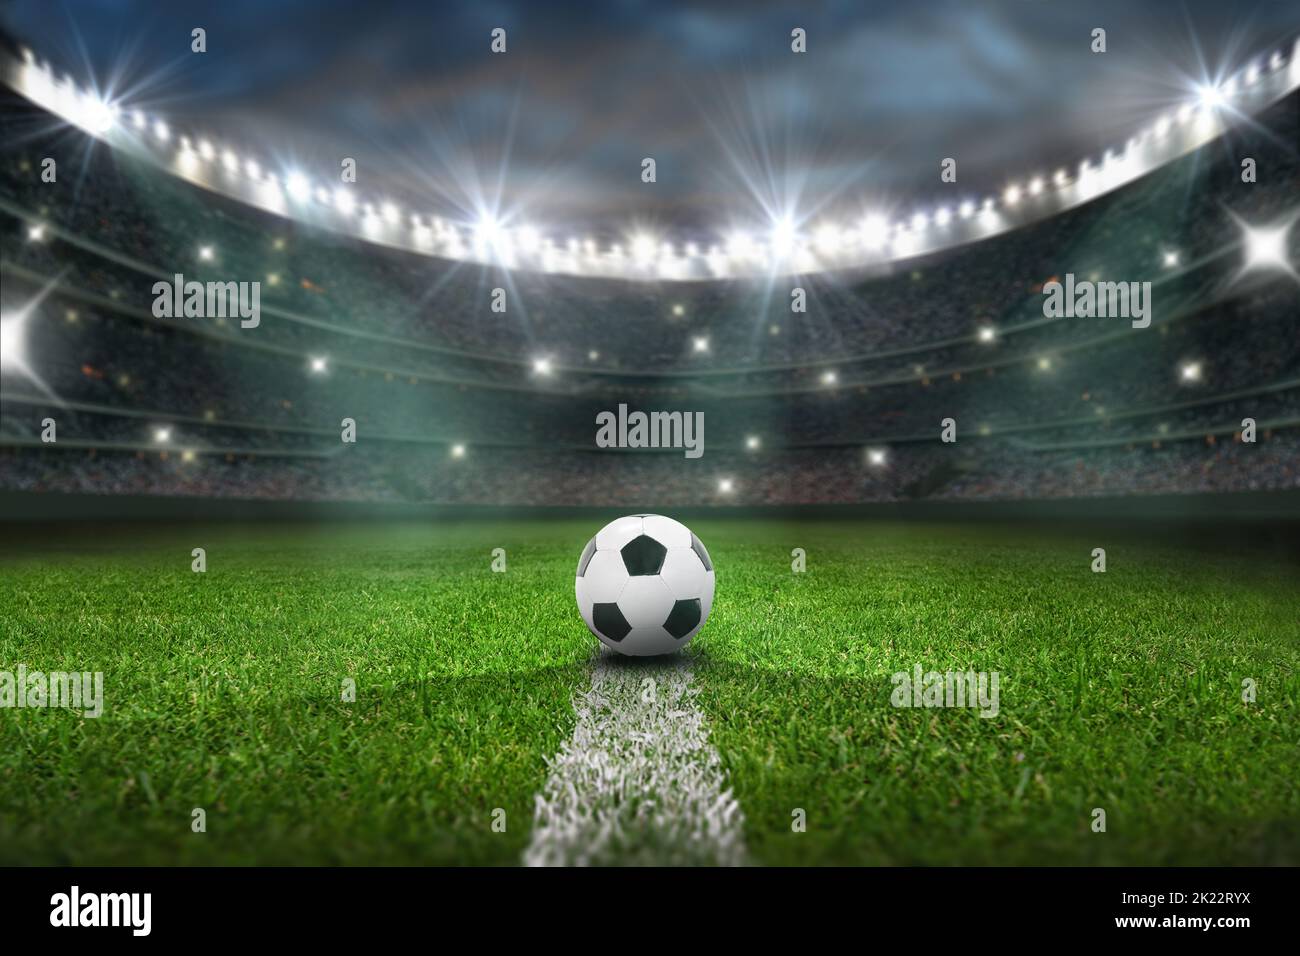 campo de juego de fútbol texturizado con neon fog - centro, mediocampo Foto de stock